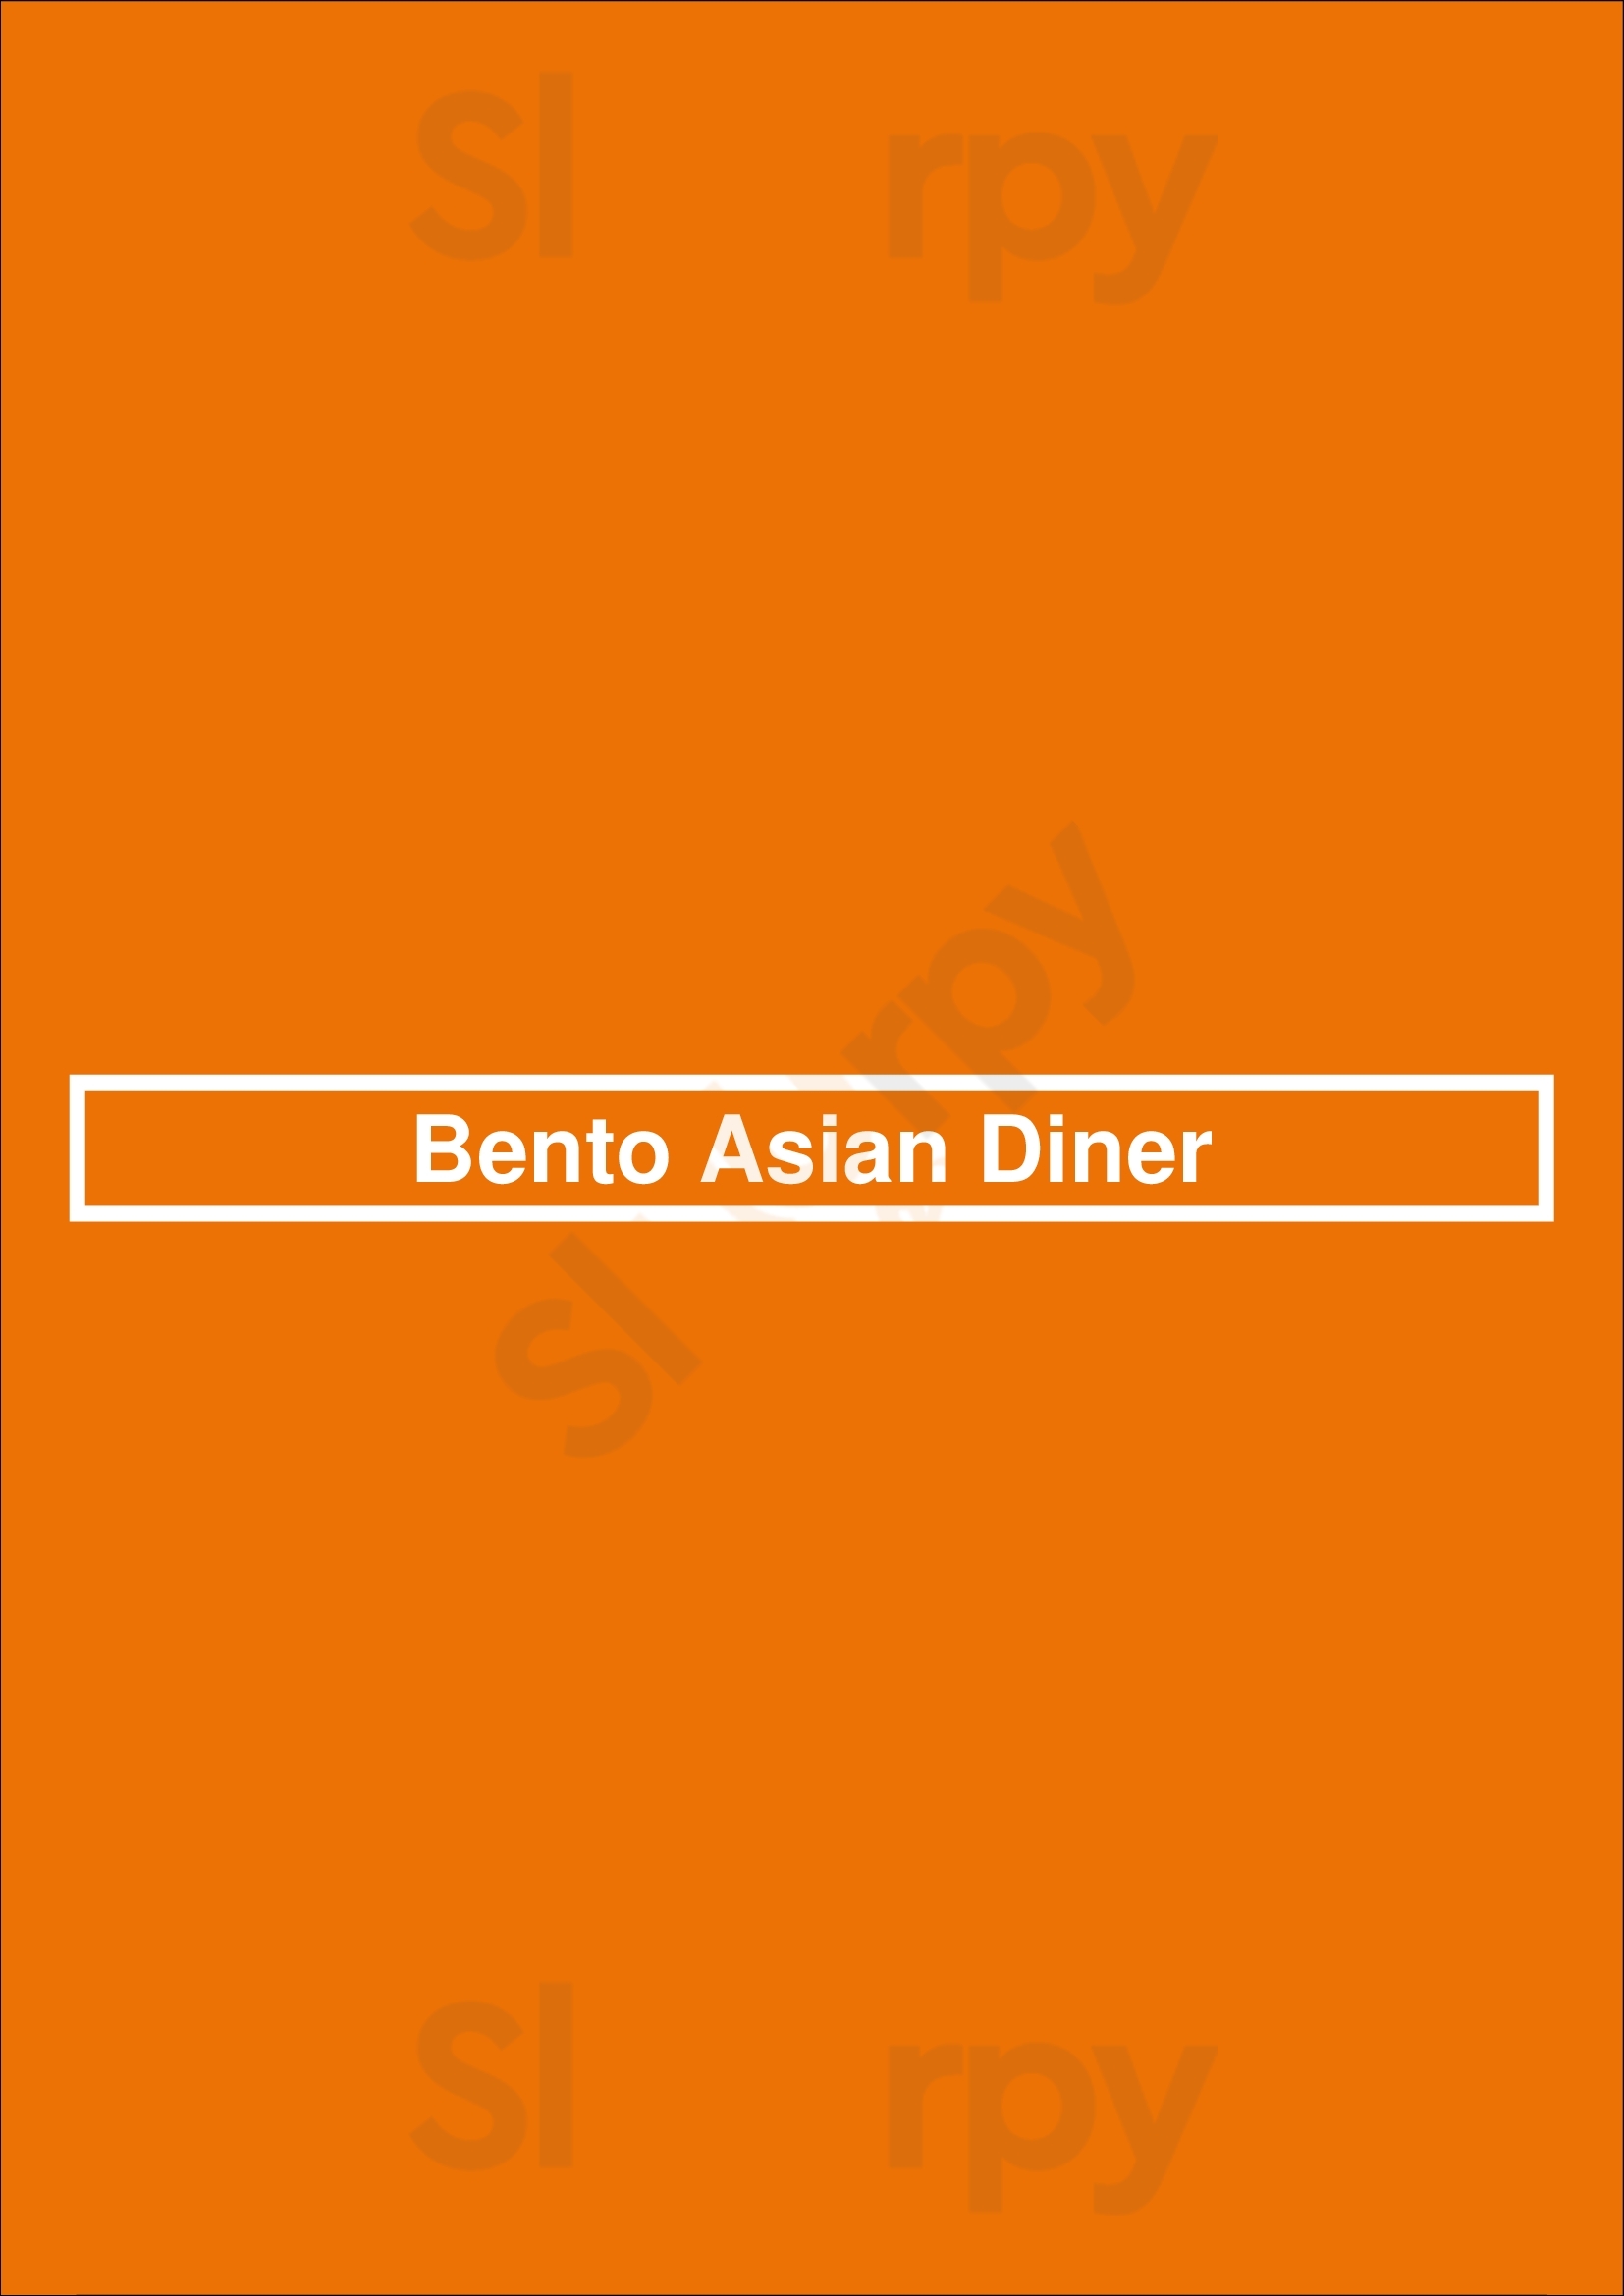 Bento Asian Diner Broken Arrow Menu - 1